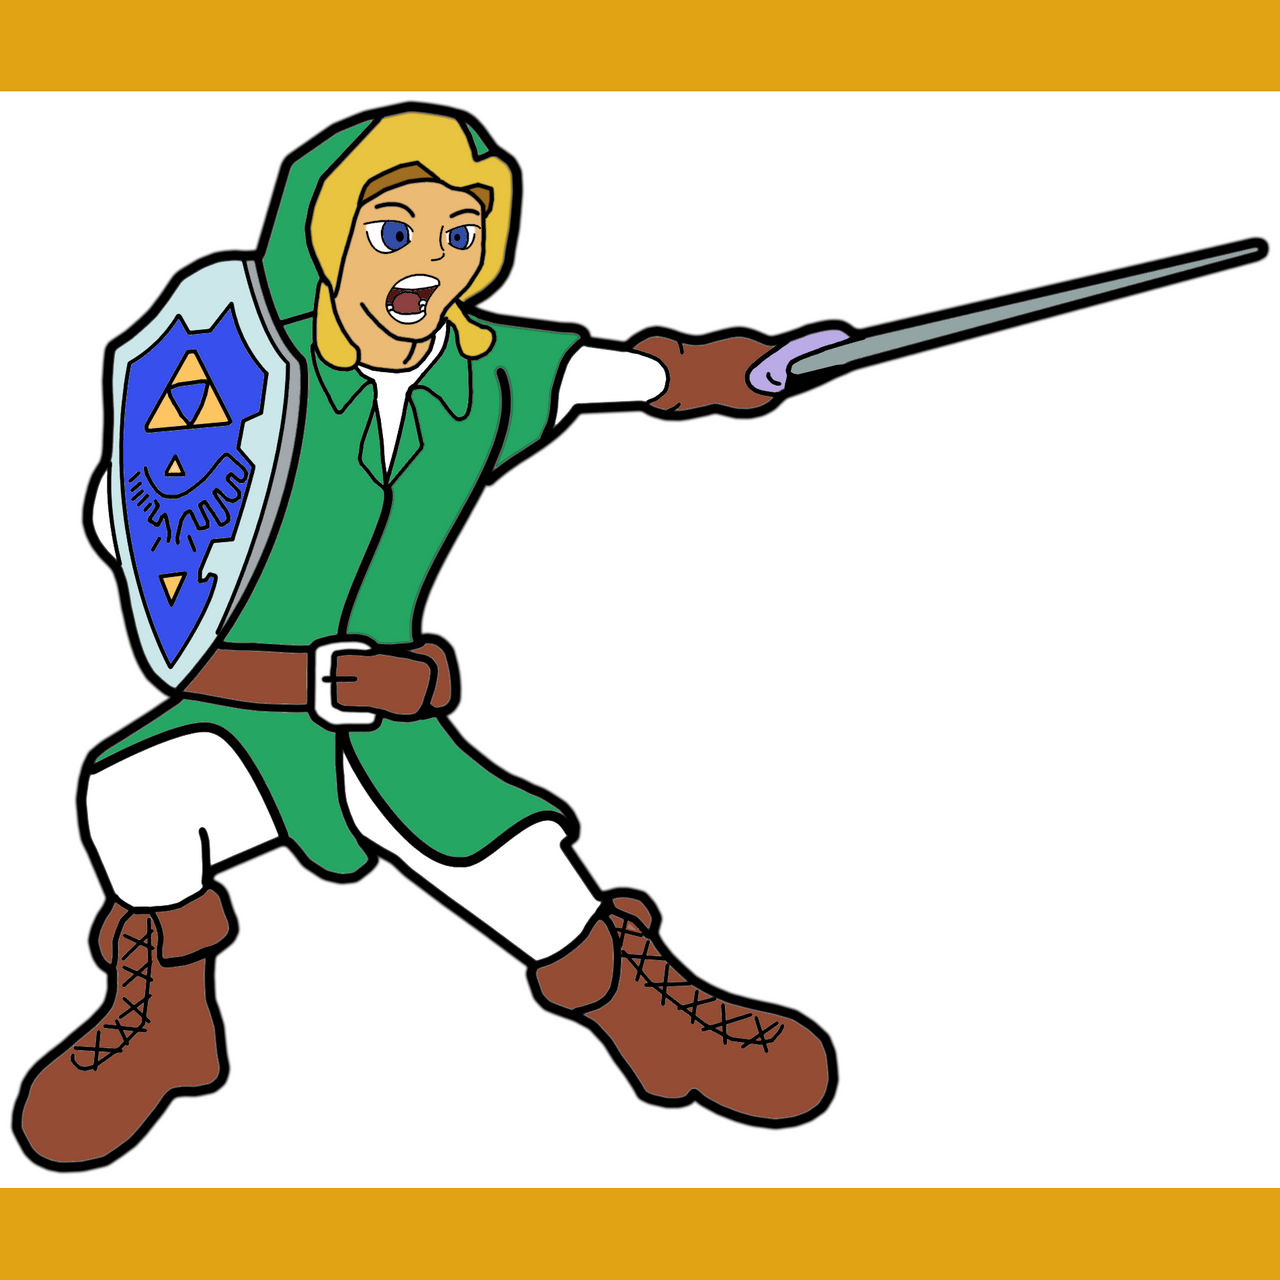 Link The Legend of Zelda meme =) by Asshunter777ART on DeviantArt